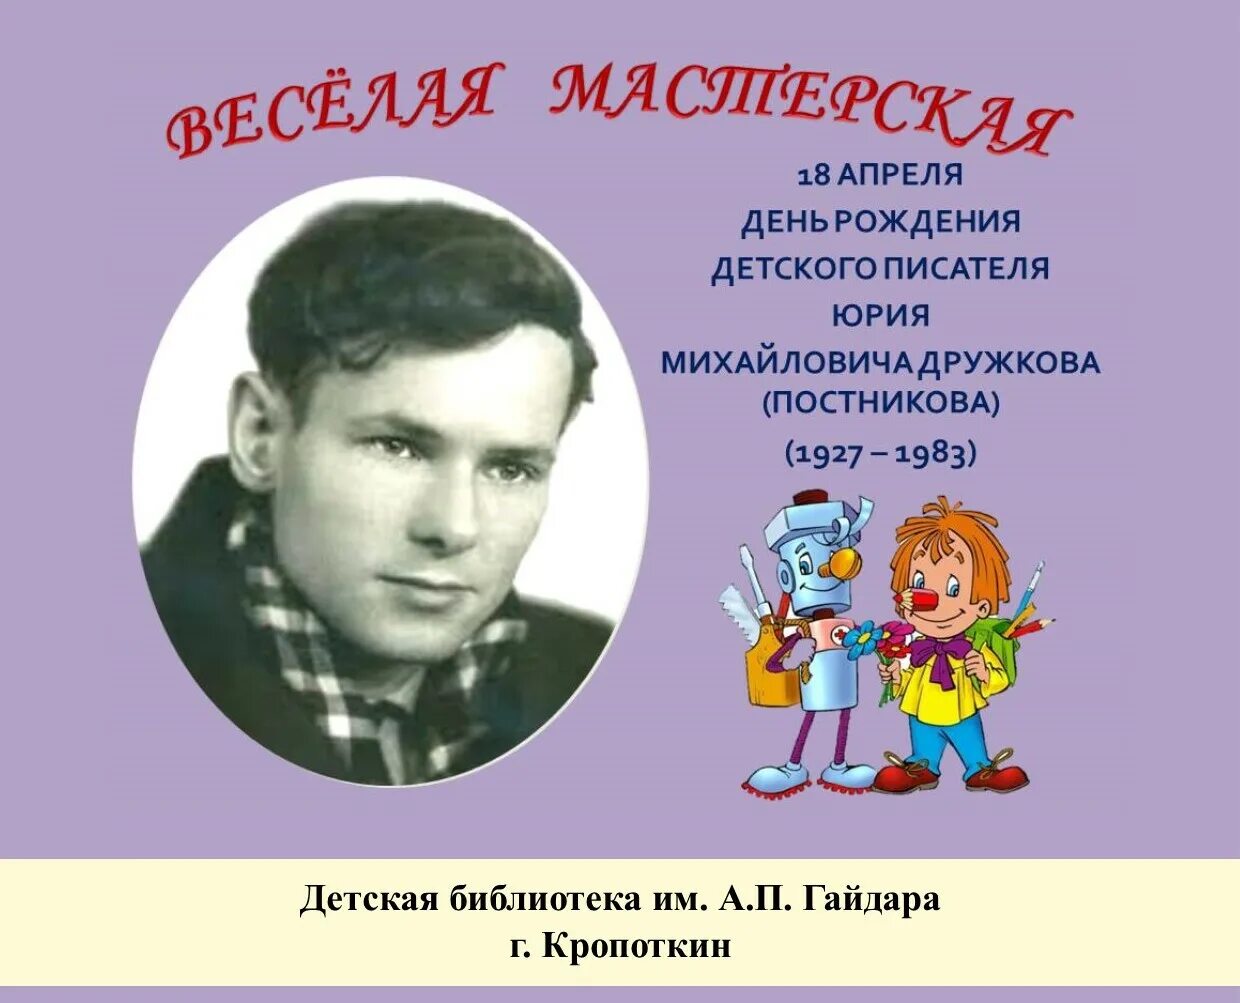 1 апреля день рождения писателей. Юрия Михайловича Дружкова. 18 Апреля день рождения писателя.